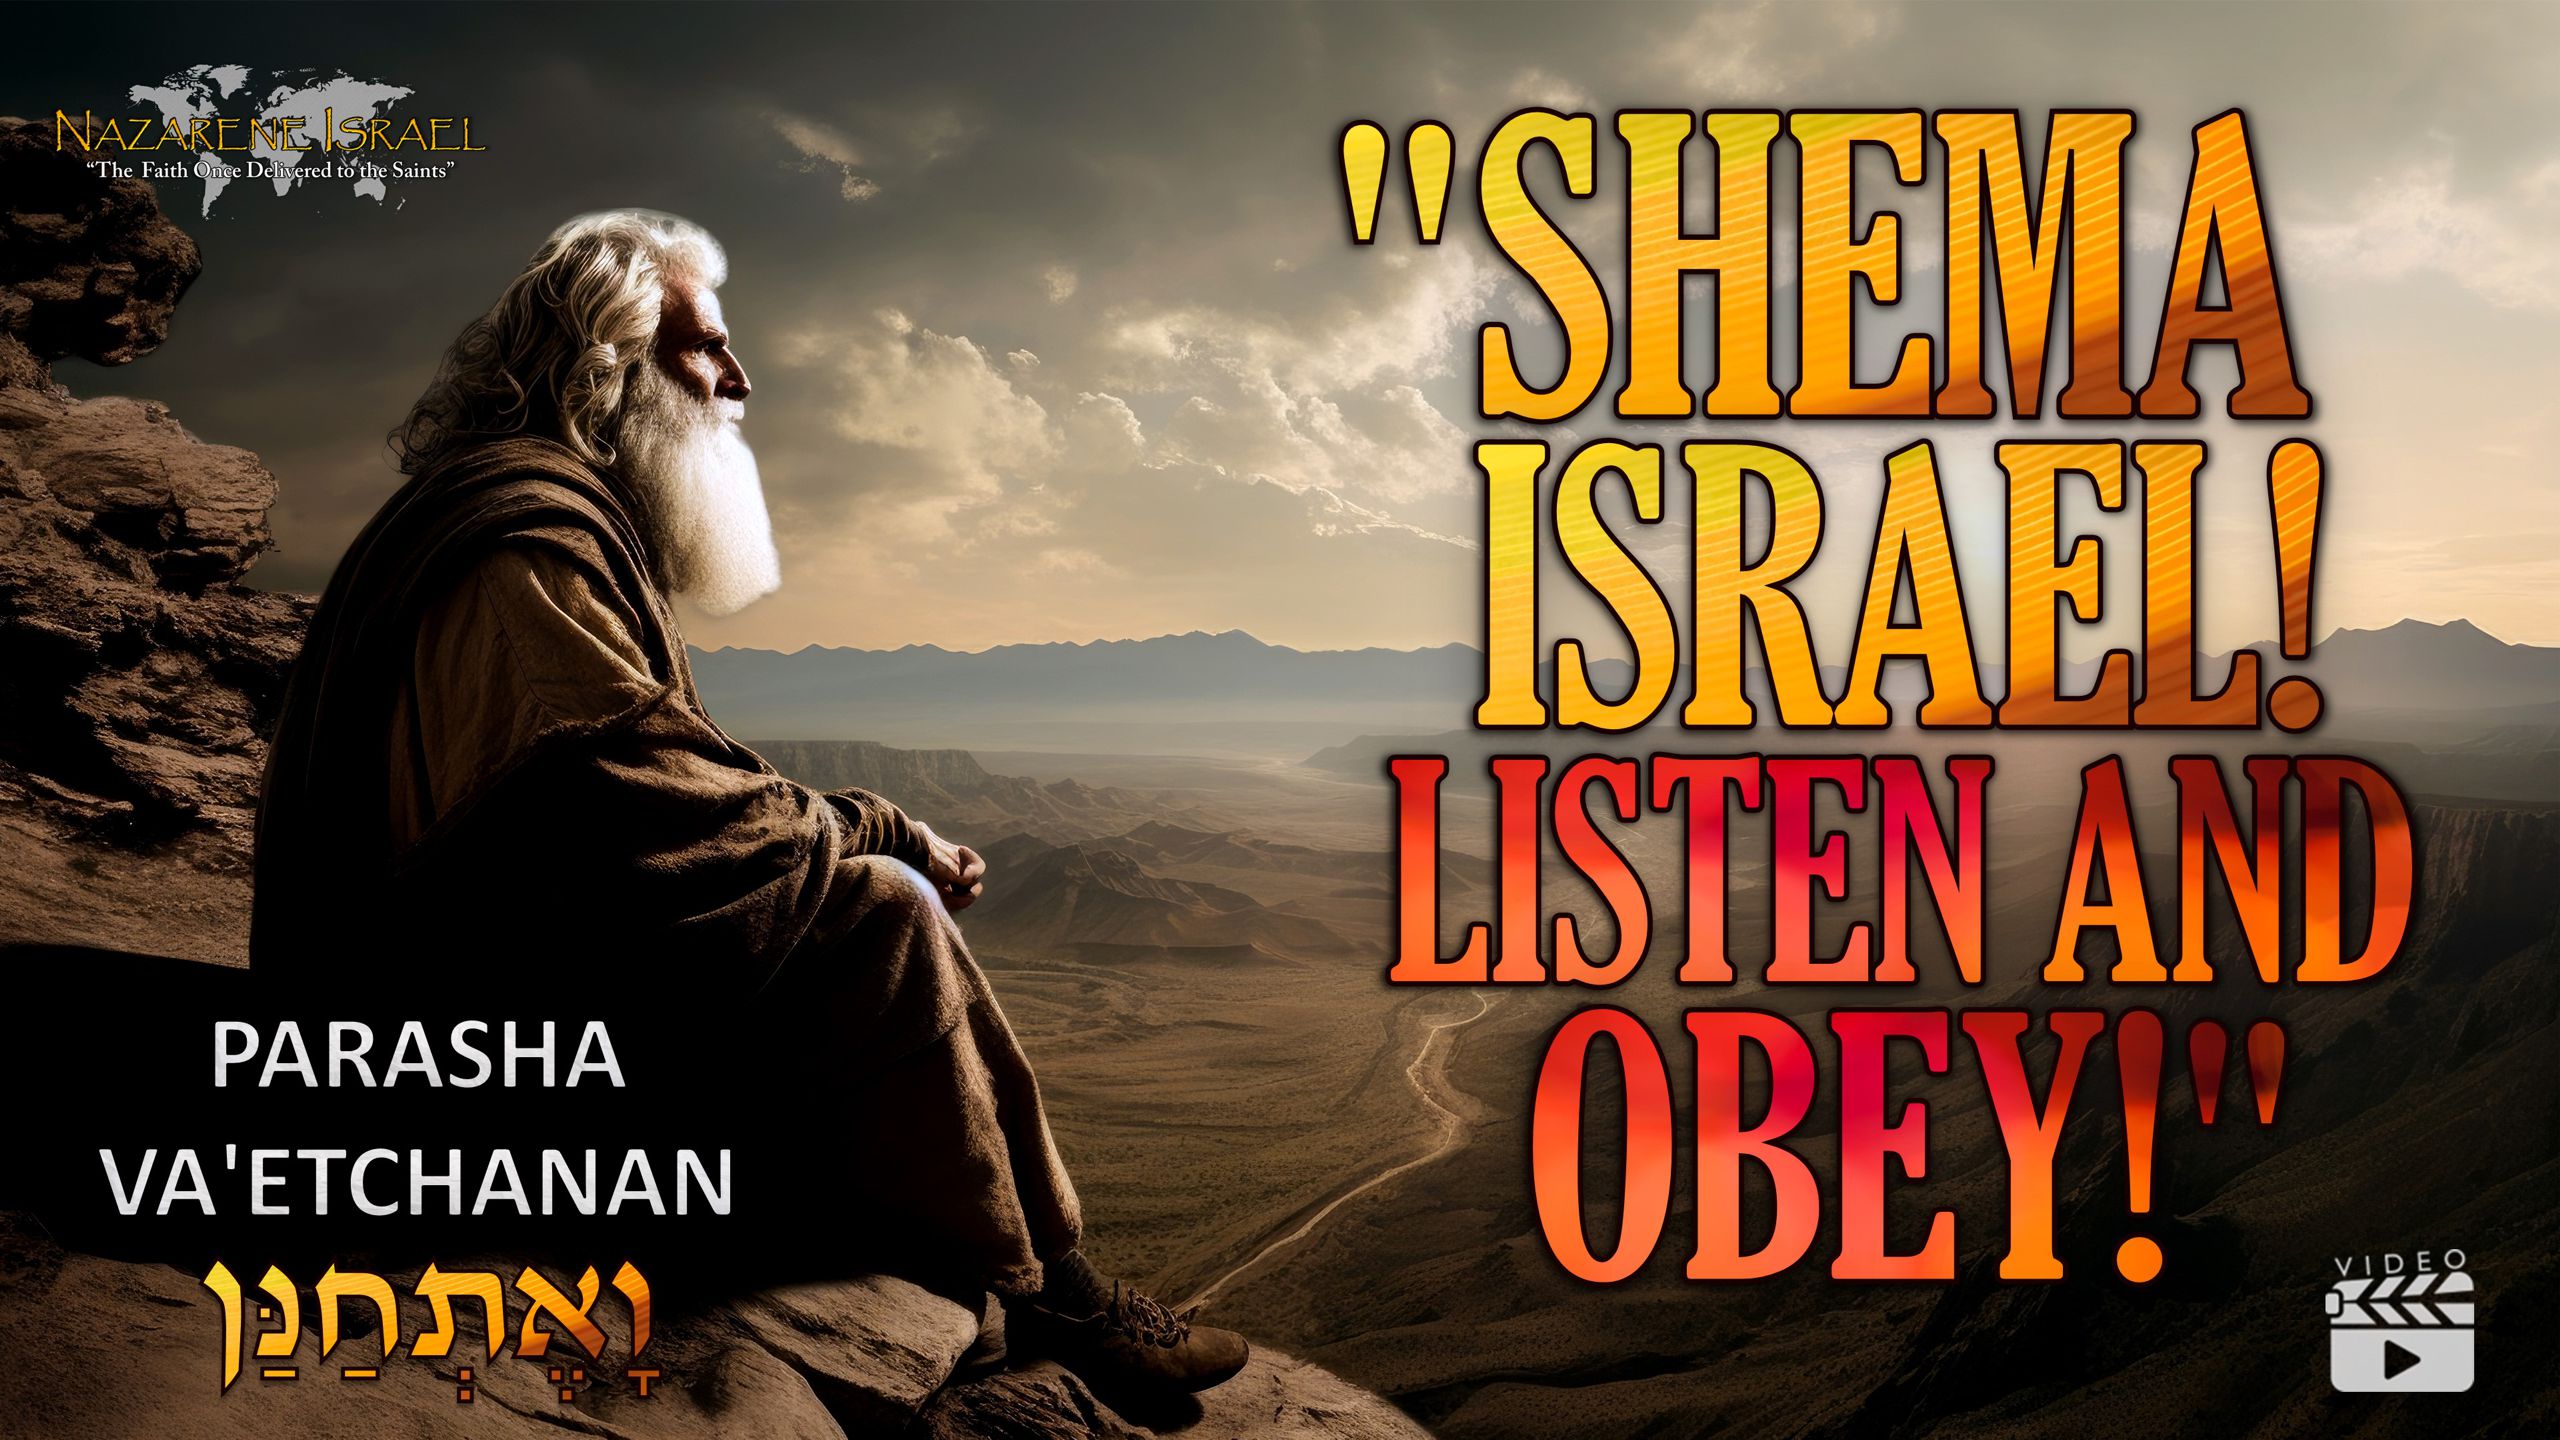 Parasha Va’etchanan – Shema O Israel! Listen and Obey!